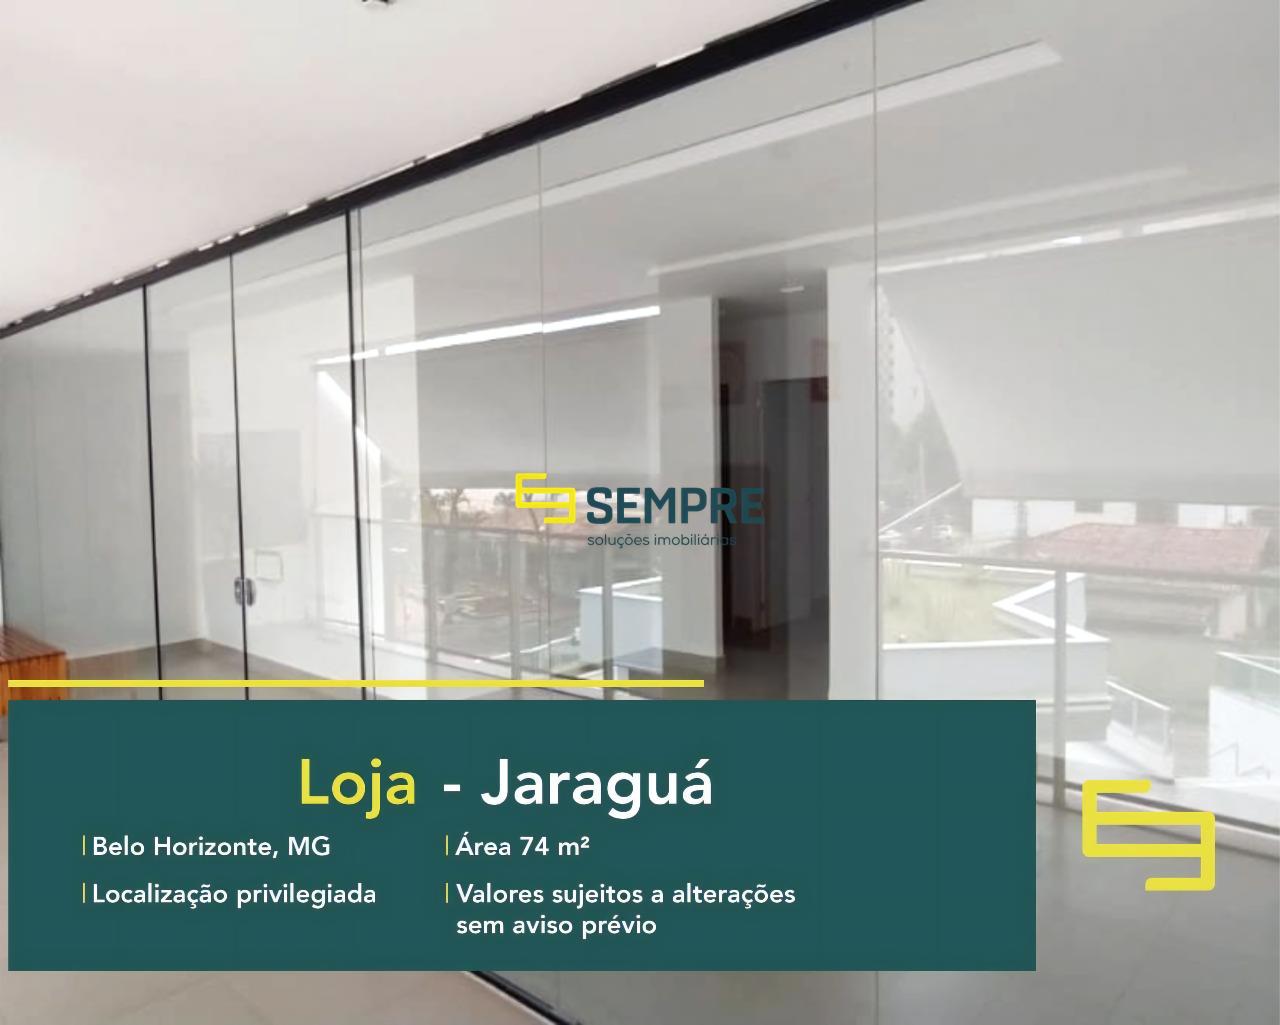 Loja no bairro Jaraguá para alugar em Belo Horizonte, excelente localização. O estabelecimento comercial conta com área de 67,94 m².